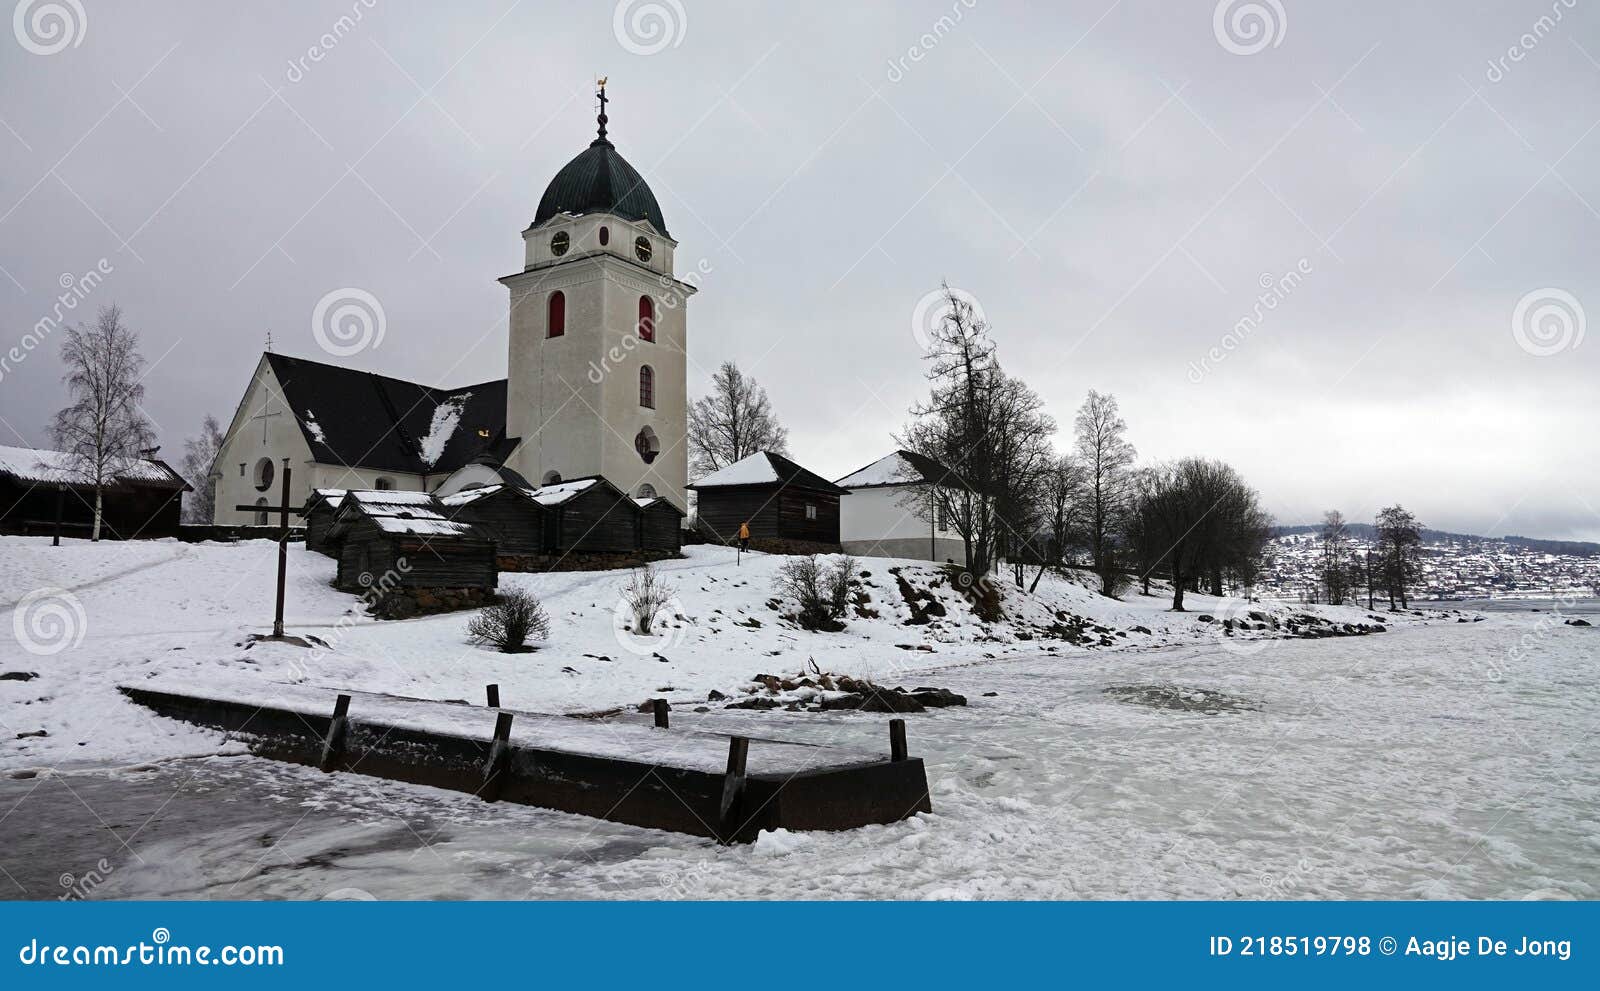 rattvik church at lake siljan in dalarna in sweden